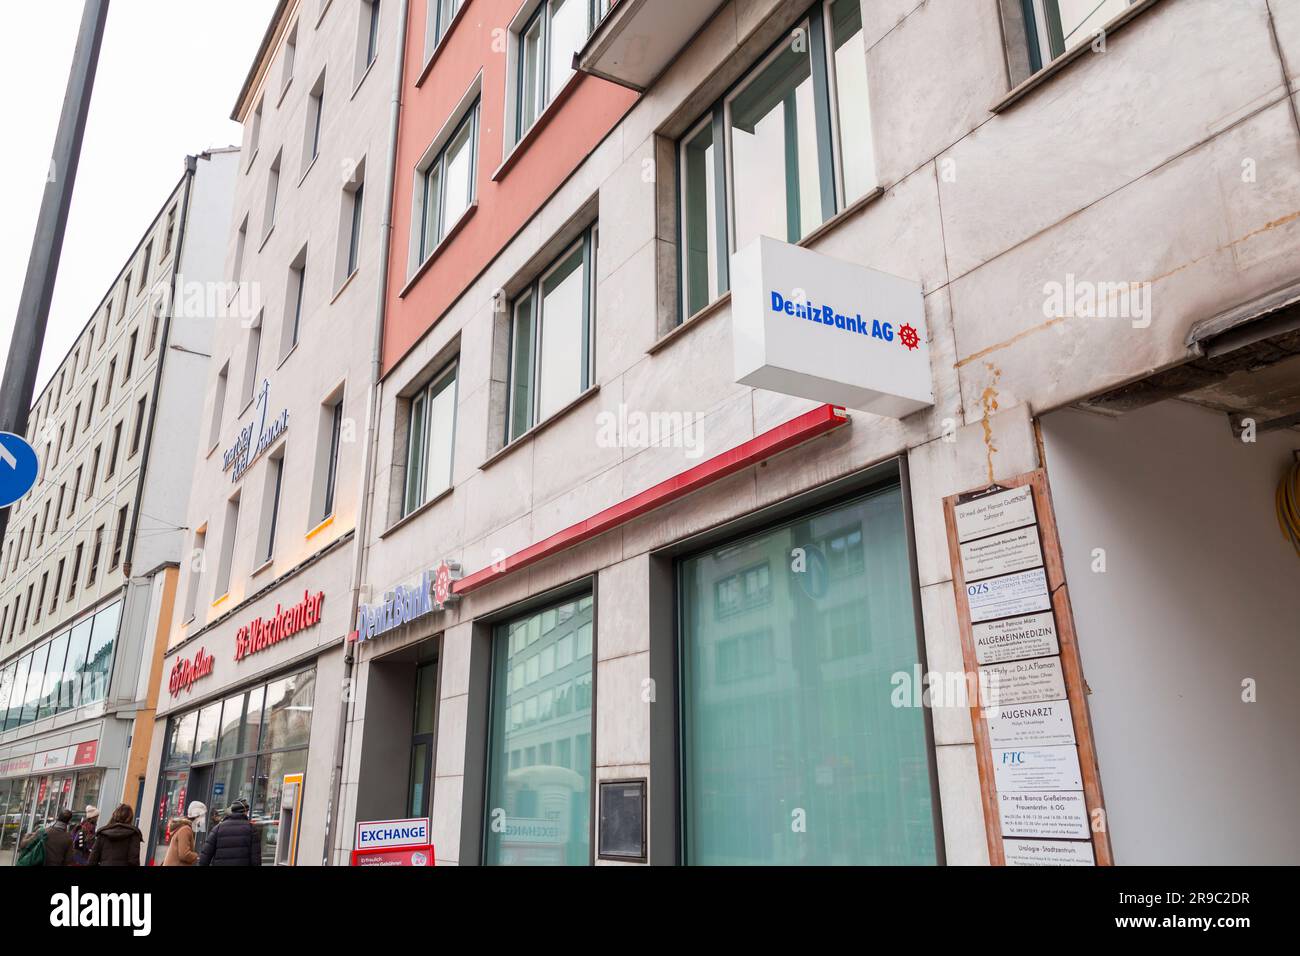 München, Deutschland - 23. DEZEMBER 2021: Münchner Zweigstelle der DenizBank AG, einer international tätigen türkischen Bank mit Hauptsitz in Dubai. Stockfoto